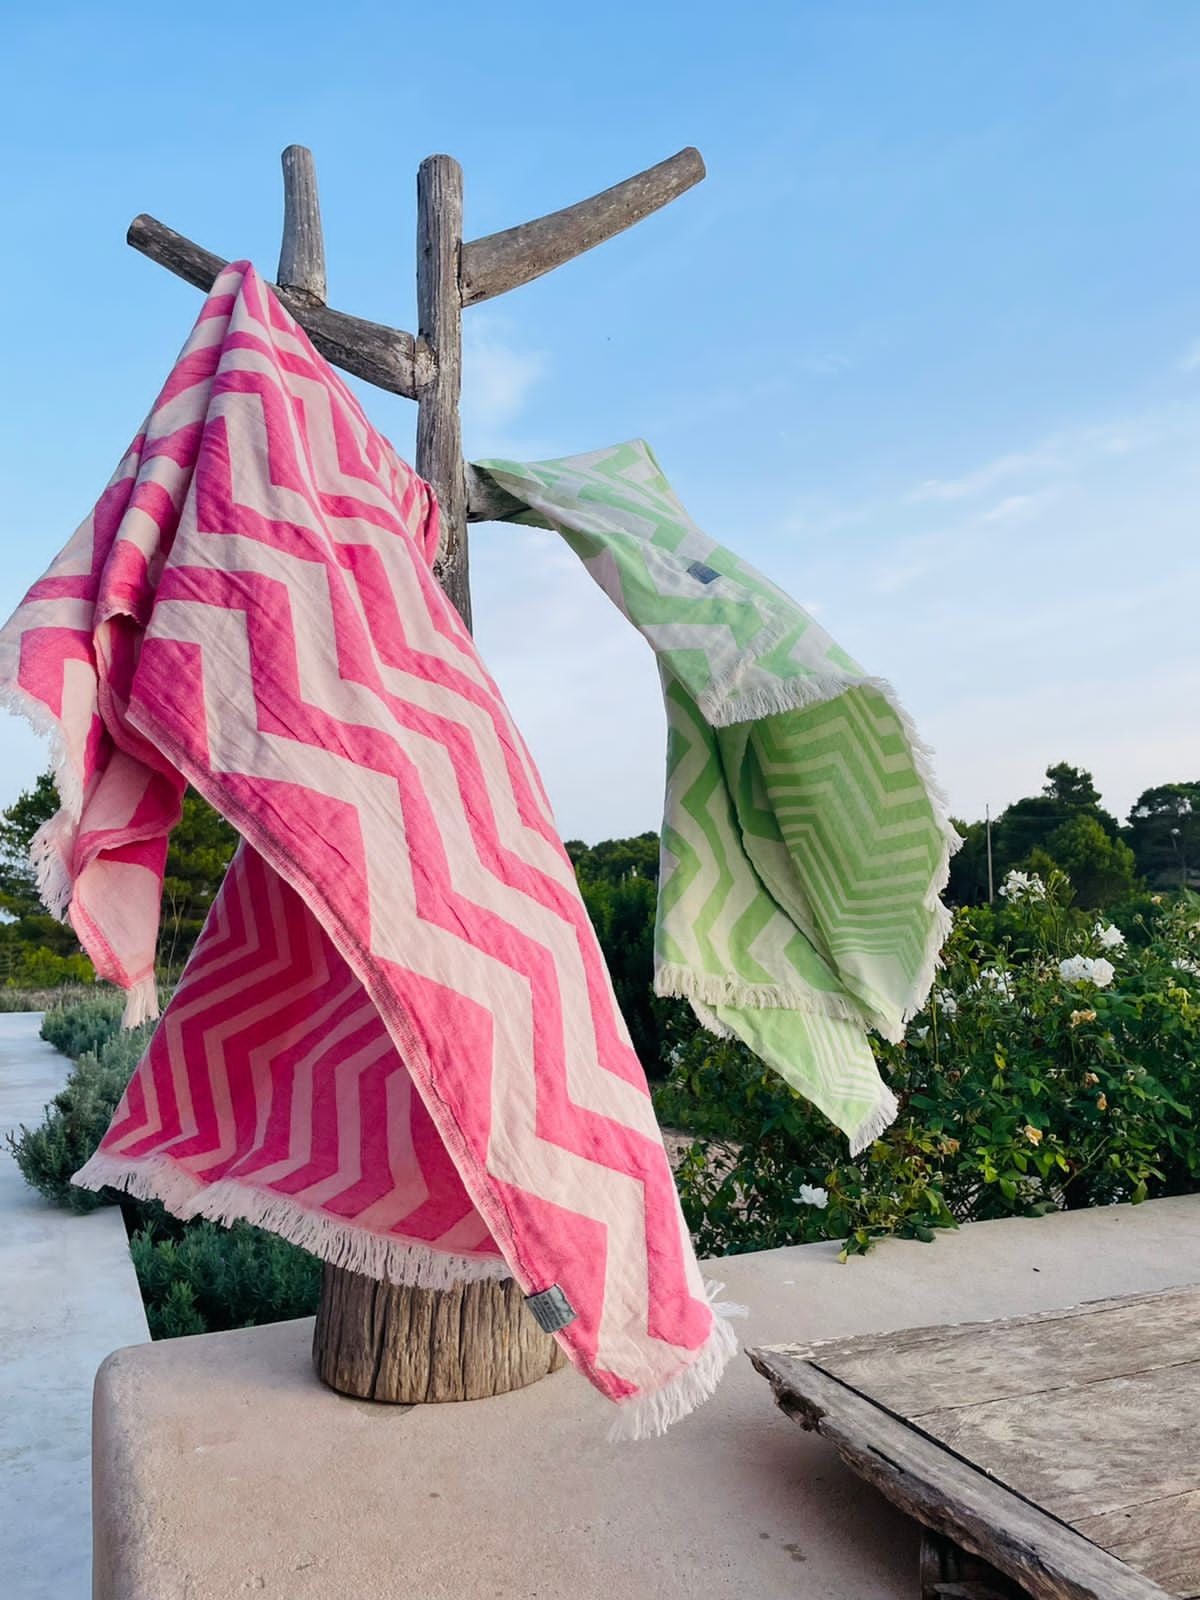 Berry Pink Chevron Design Turkish Beach Blanket